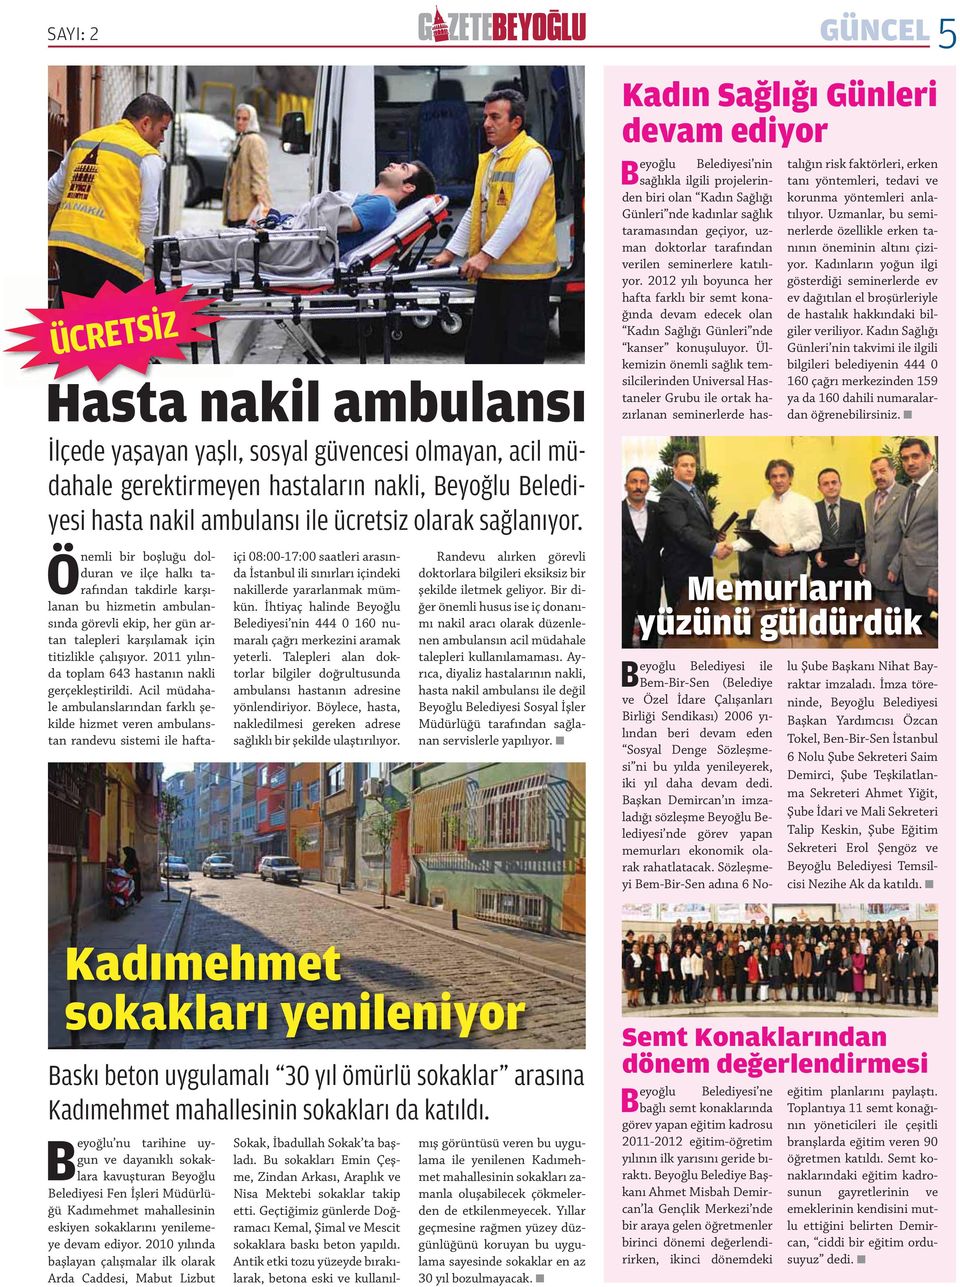 Kadın Sağlığı Günleri devam ediyor Beyoğlu Belediyesi nin sağ lıkla ilgili projelerinden biri olan Kadın Sağlığı Günleri nde kadınlar sağlık taramasından geçiyor, uzman doktorlar tarafından verilen